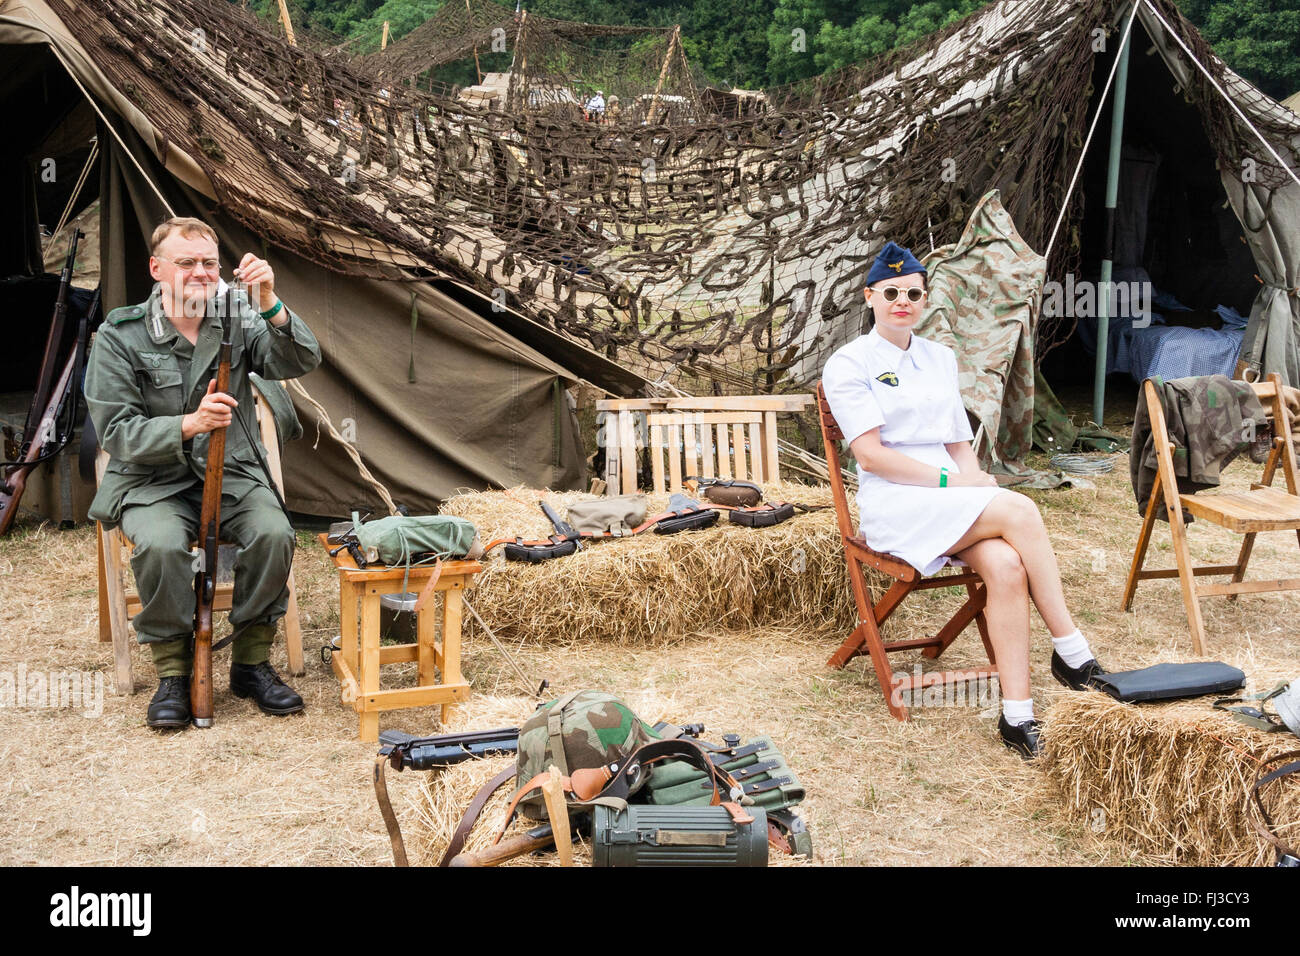 Zweiten Weltkrieg Re-enactment. Deutsche Camp mit Soldat sein Gewehr sitzend, Reinigung. Auf Stuhl eine Frau in weißen Uniform, Krankenschwester, Lächeln, Blickkontakt. Stockfoto